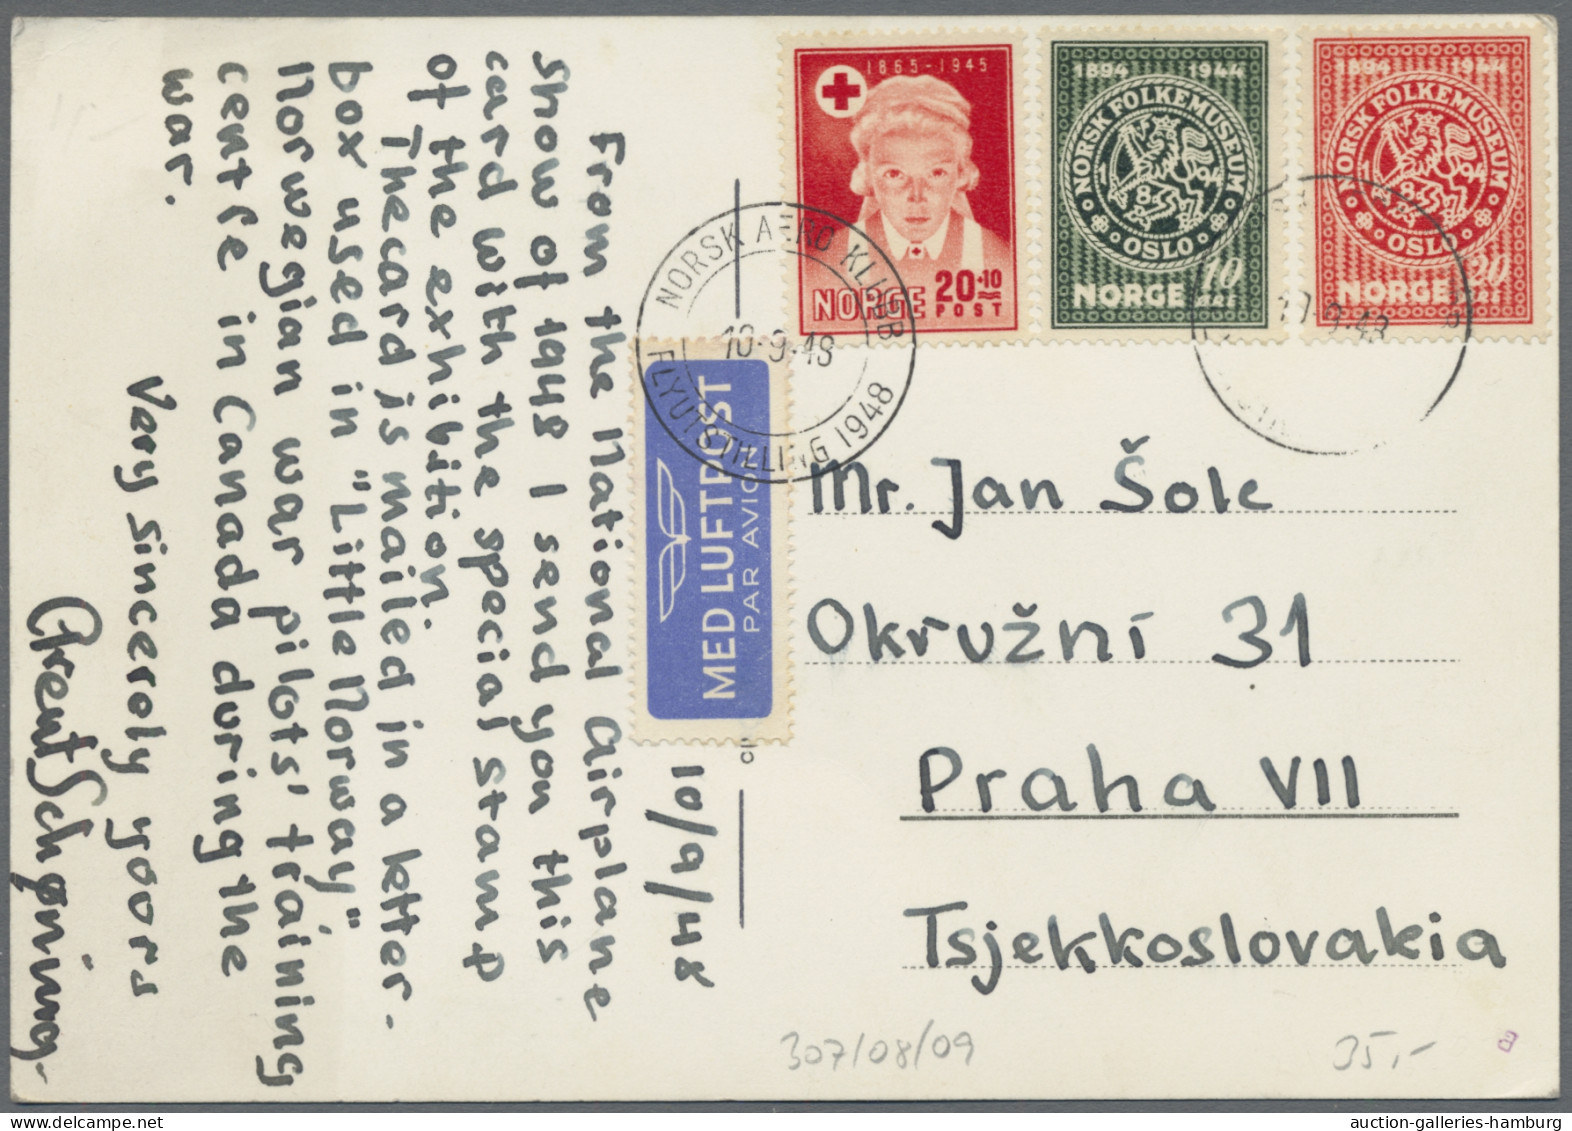 Norway: 1878-1961, Briefalbum (ohne Umschlag) mit 93 Belegen (Ganzsachen und Bri